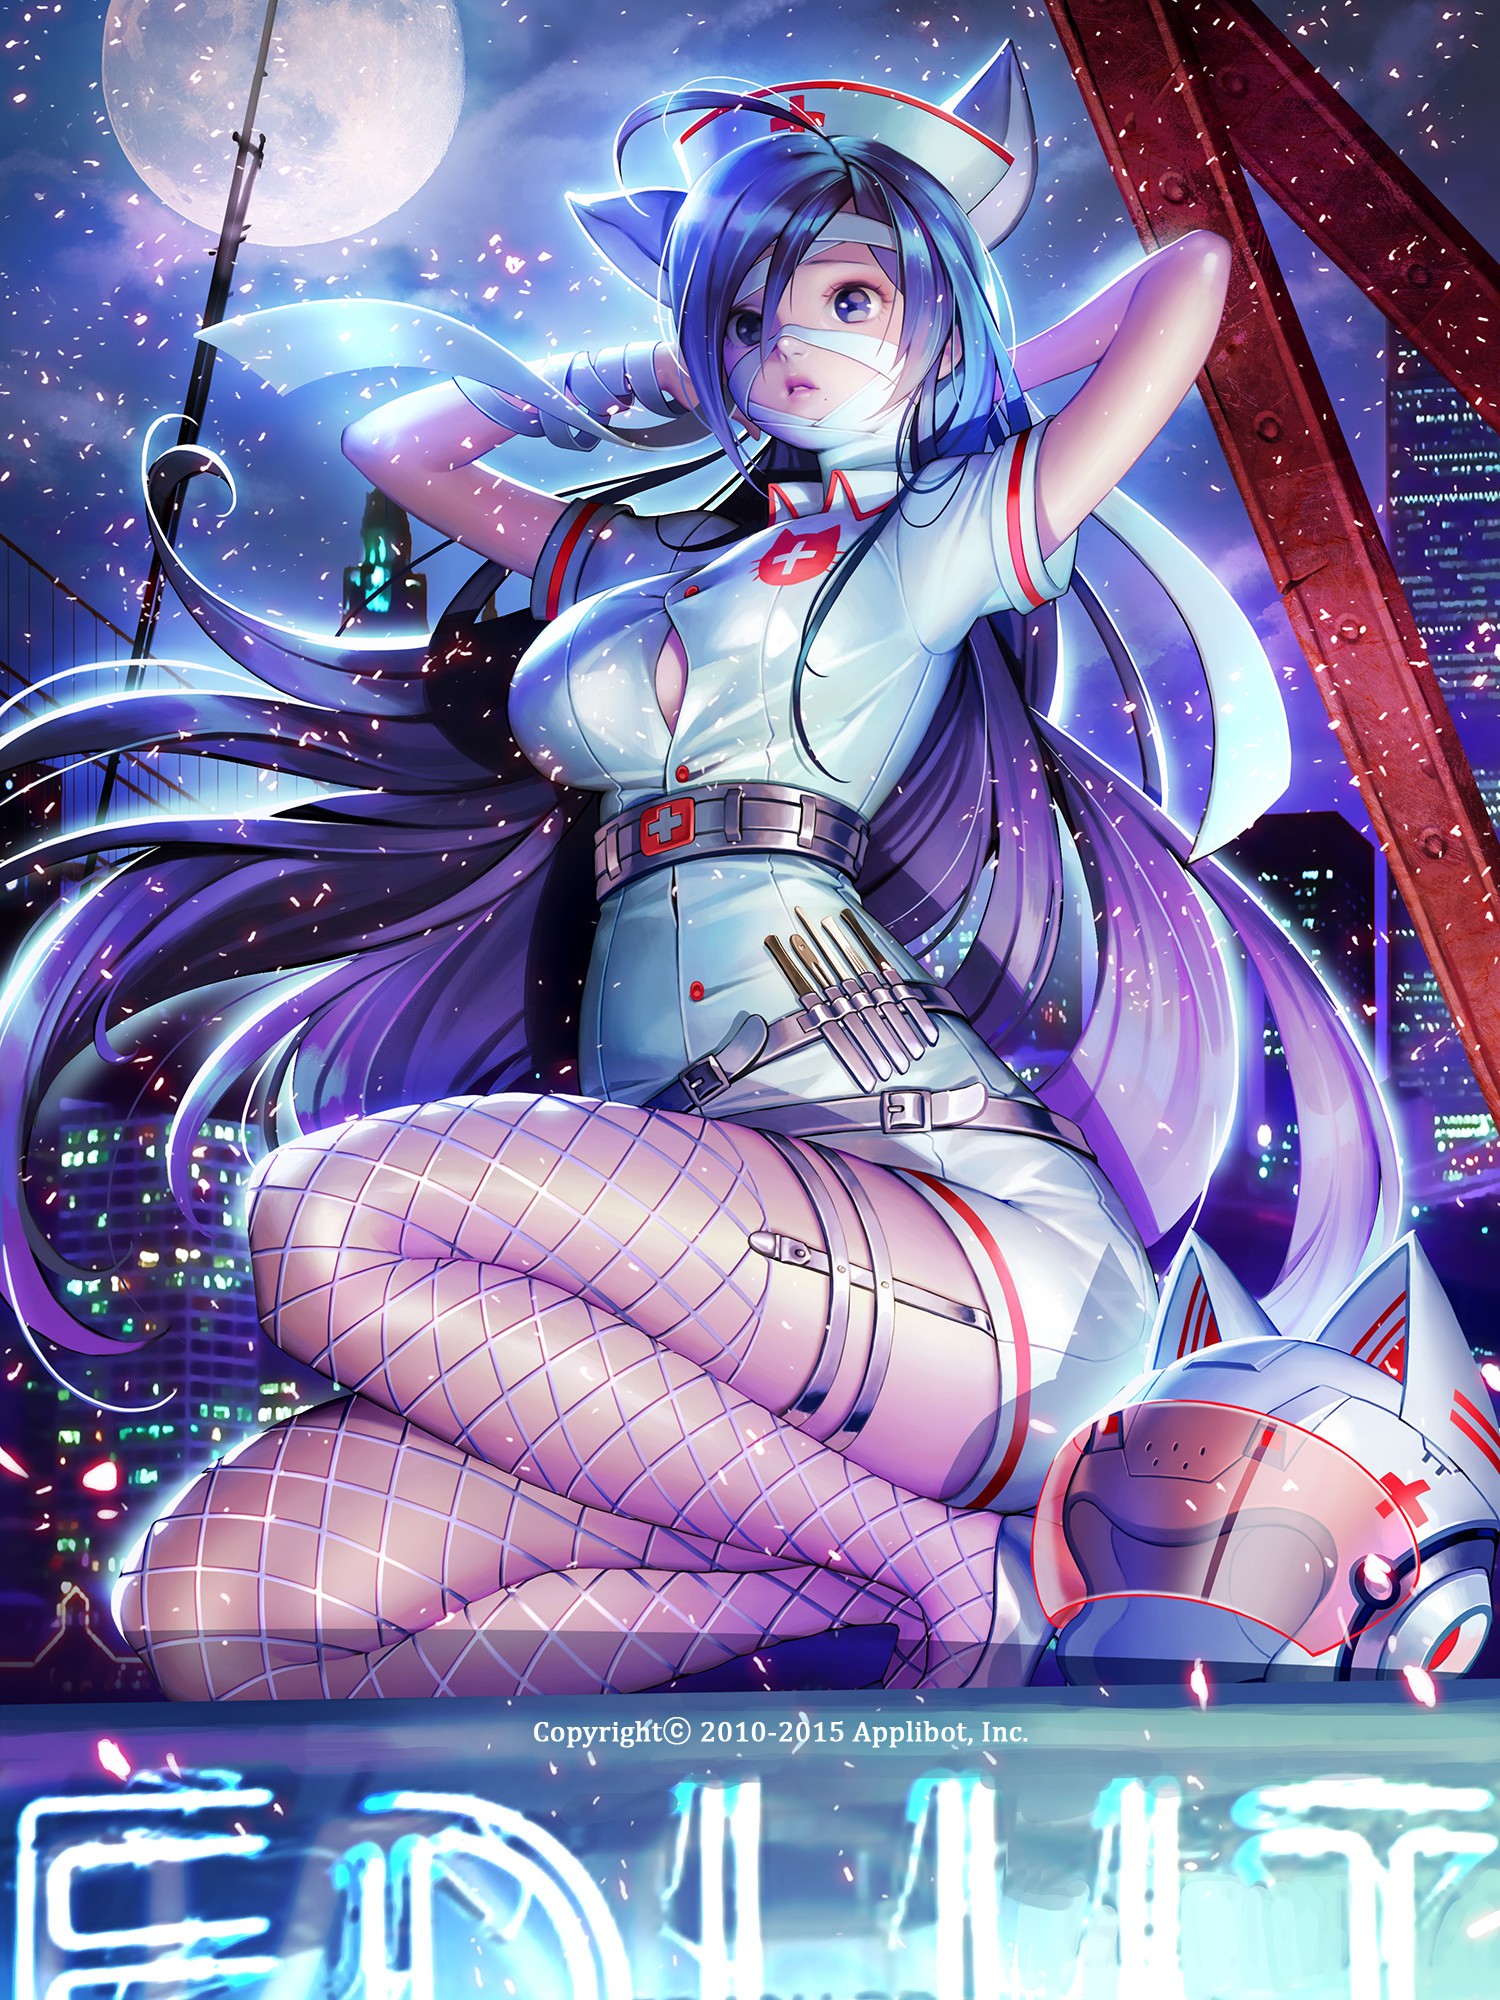 Anime 1500x2000 anime anime girls ArtStation thighs legs stockings boobs purple hair long hair kneeling fishnet